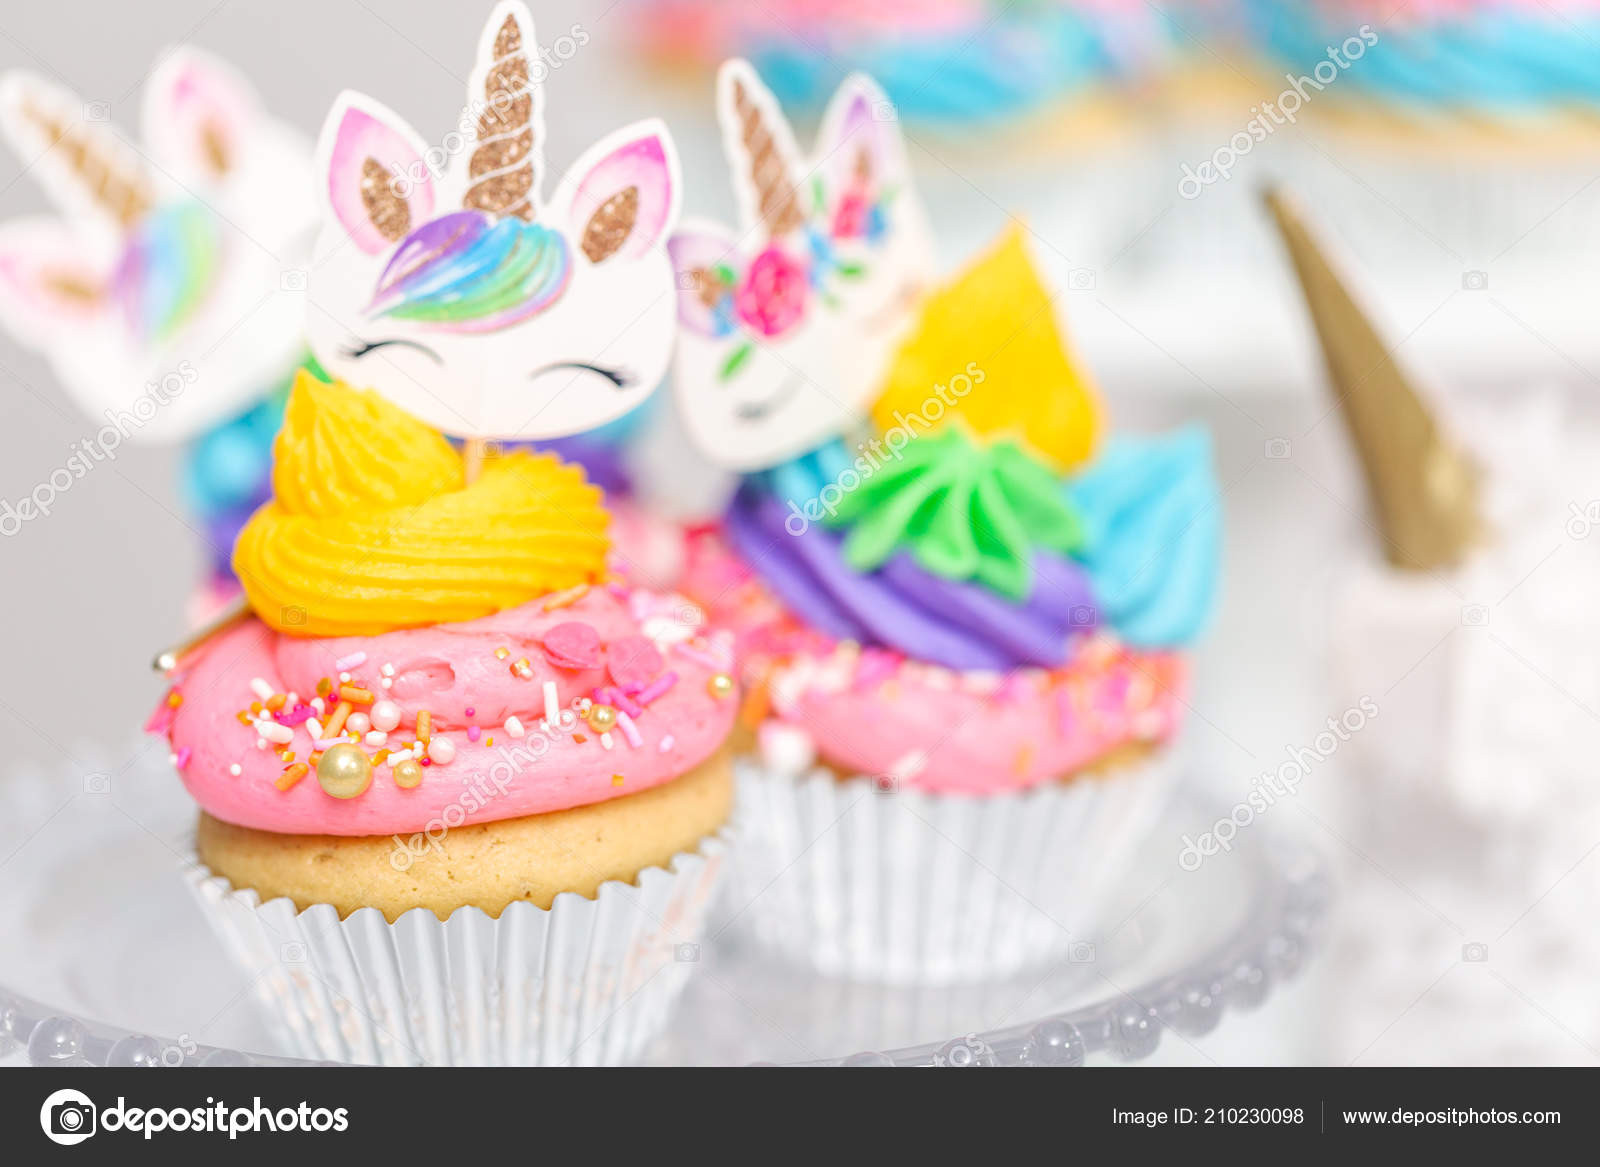 Zuckerguss Auf Warmen Kuchen
 Einhorn Cupcakes Mit Mehrfarbigen Buttercreme Zuckerguss